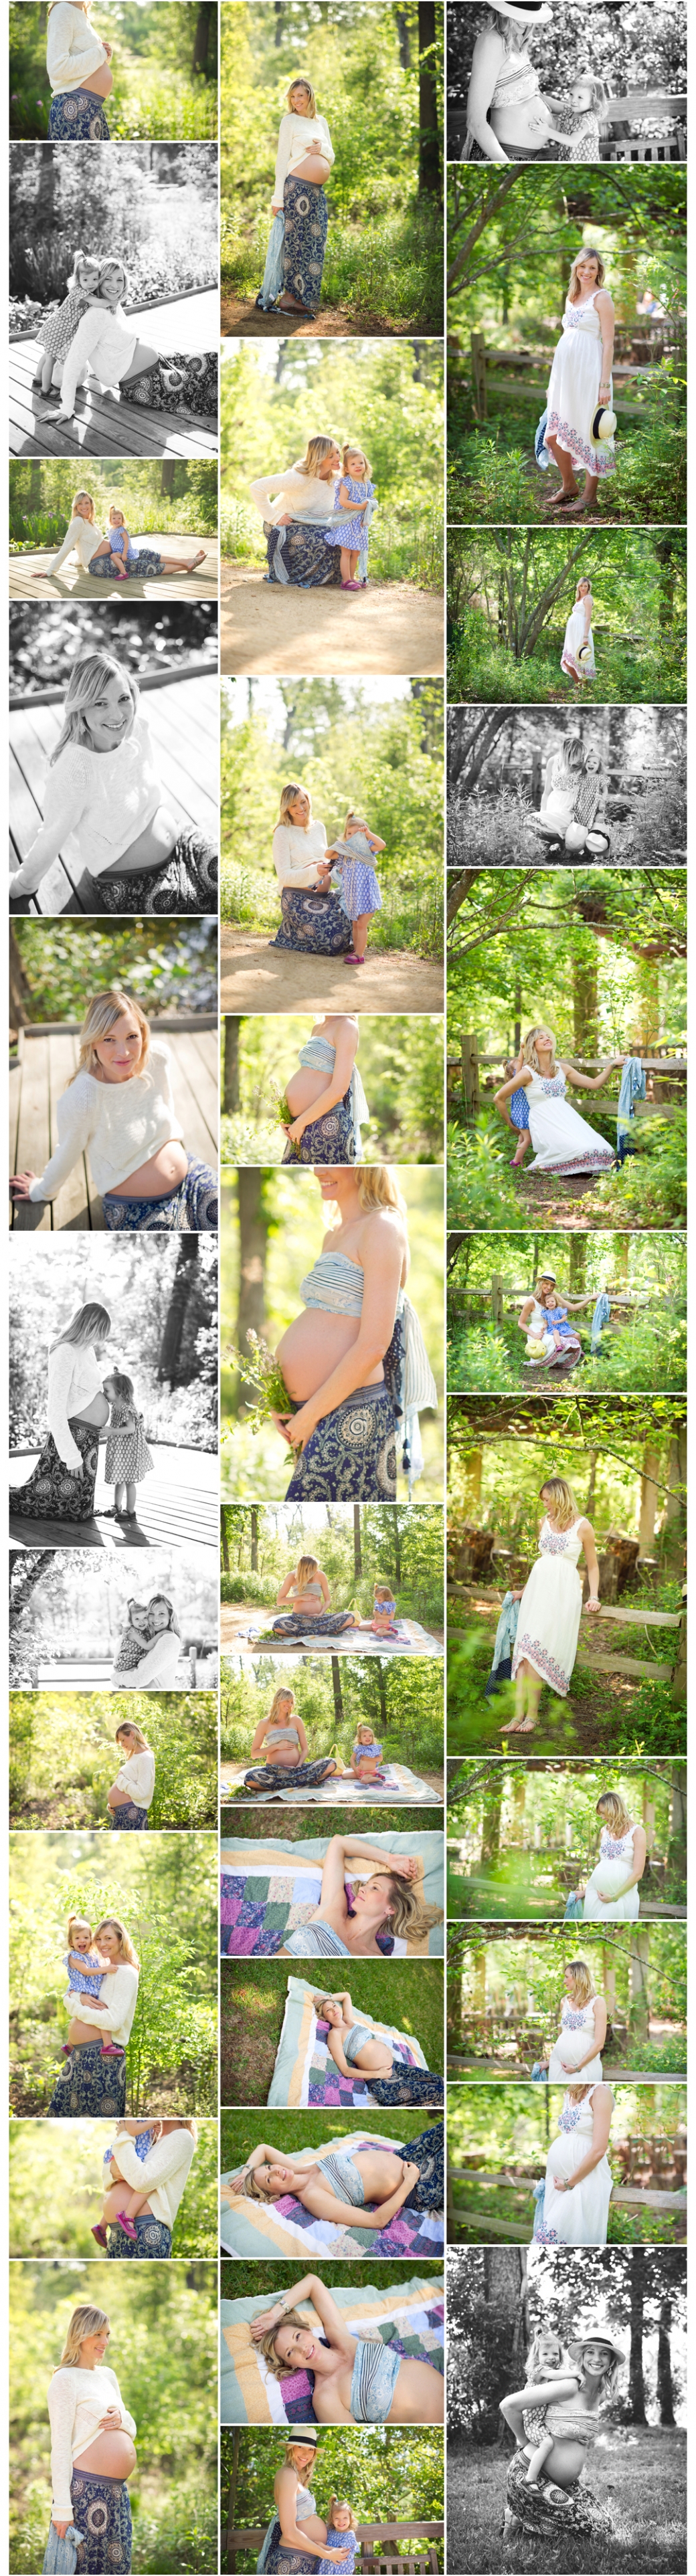 Kelly Garvey Photography | briana + himma. maternity session